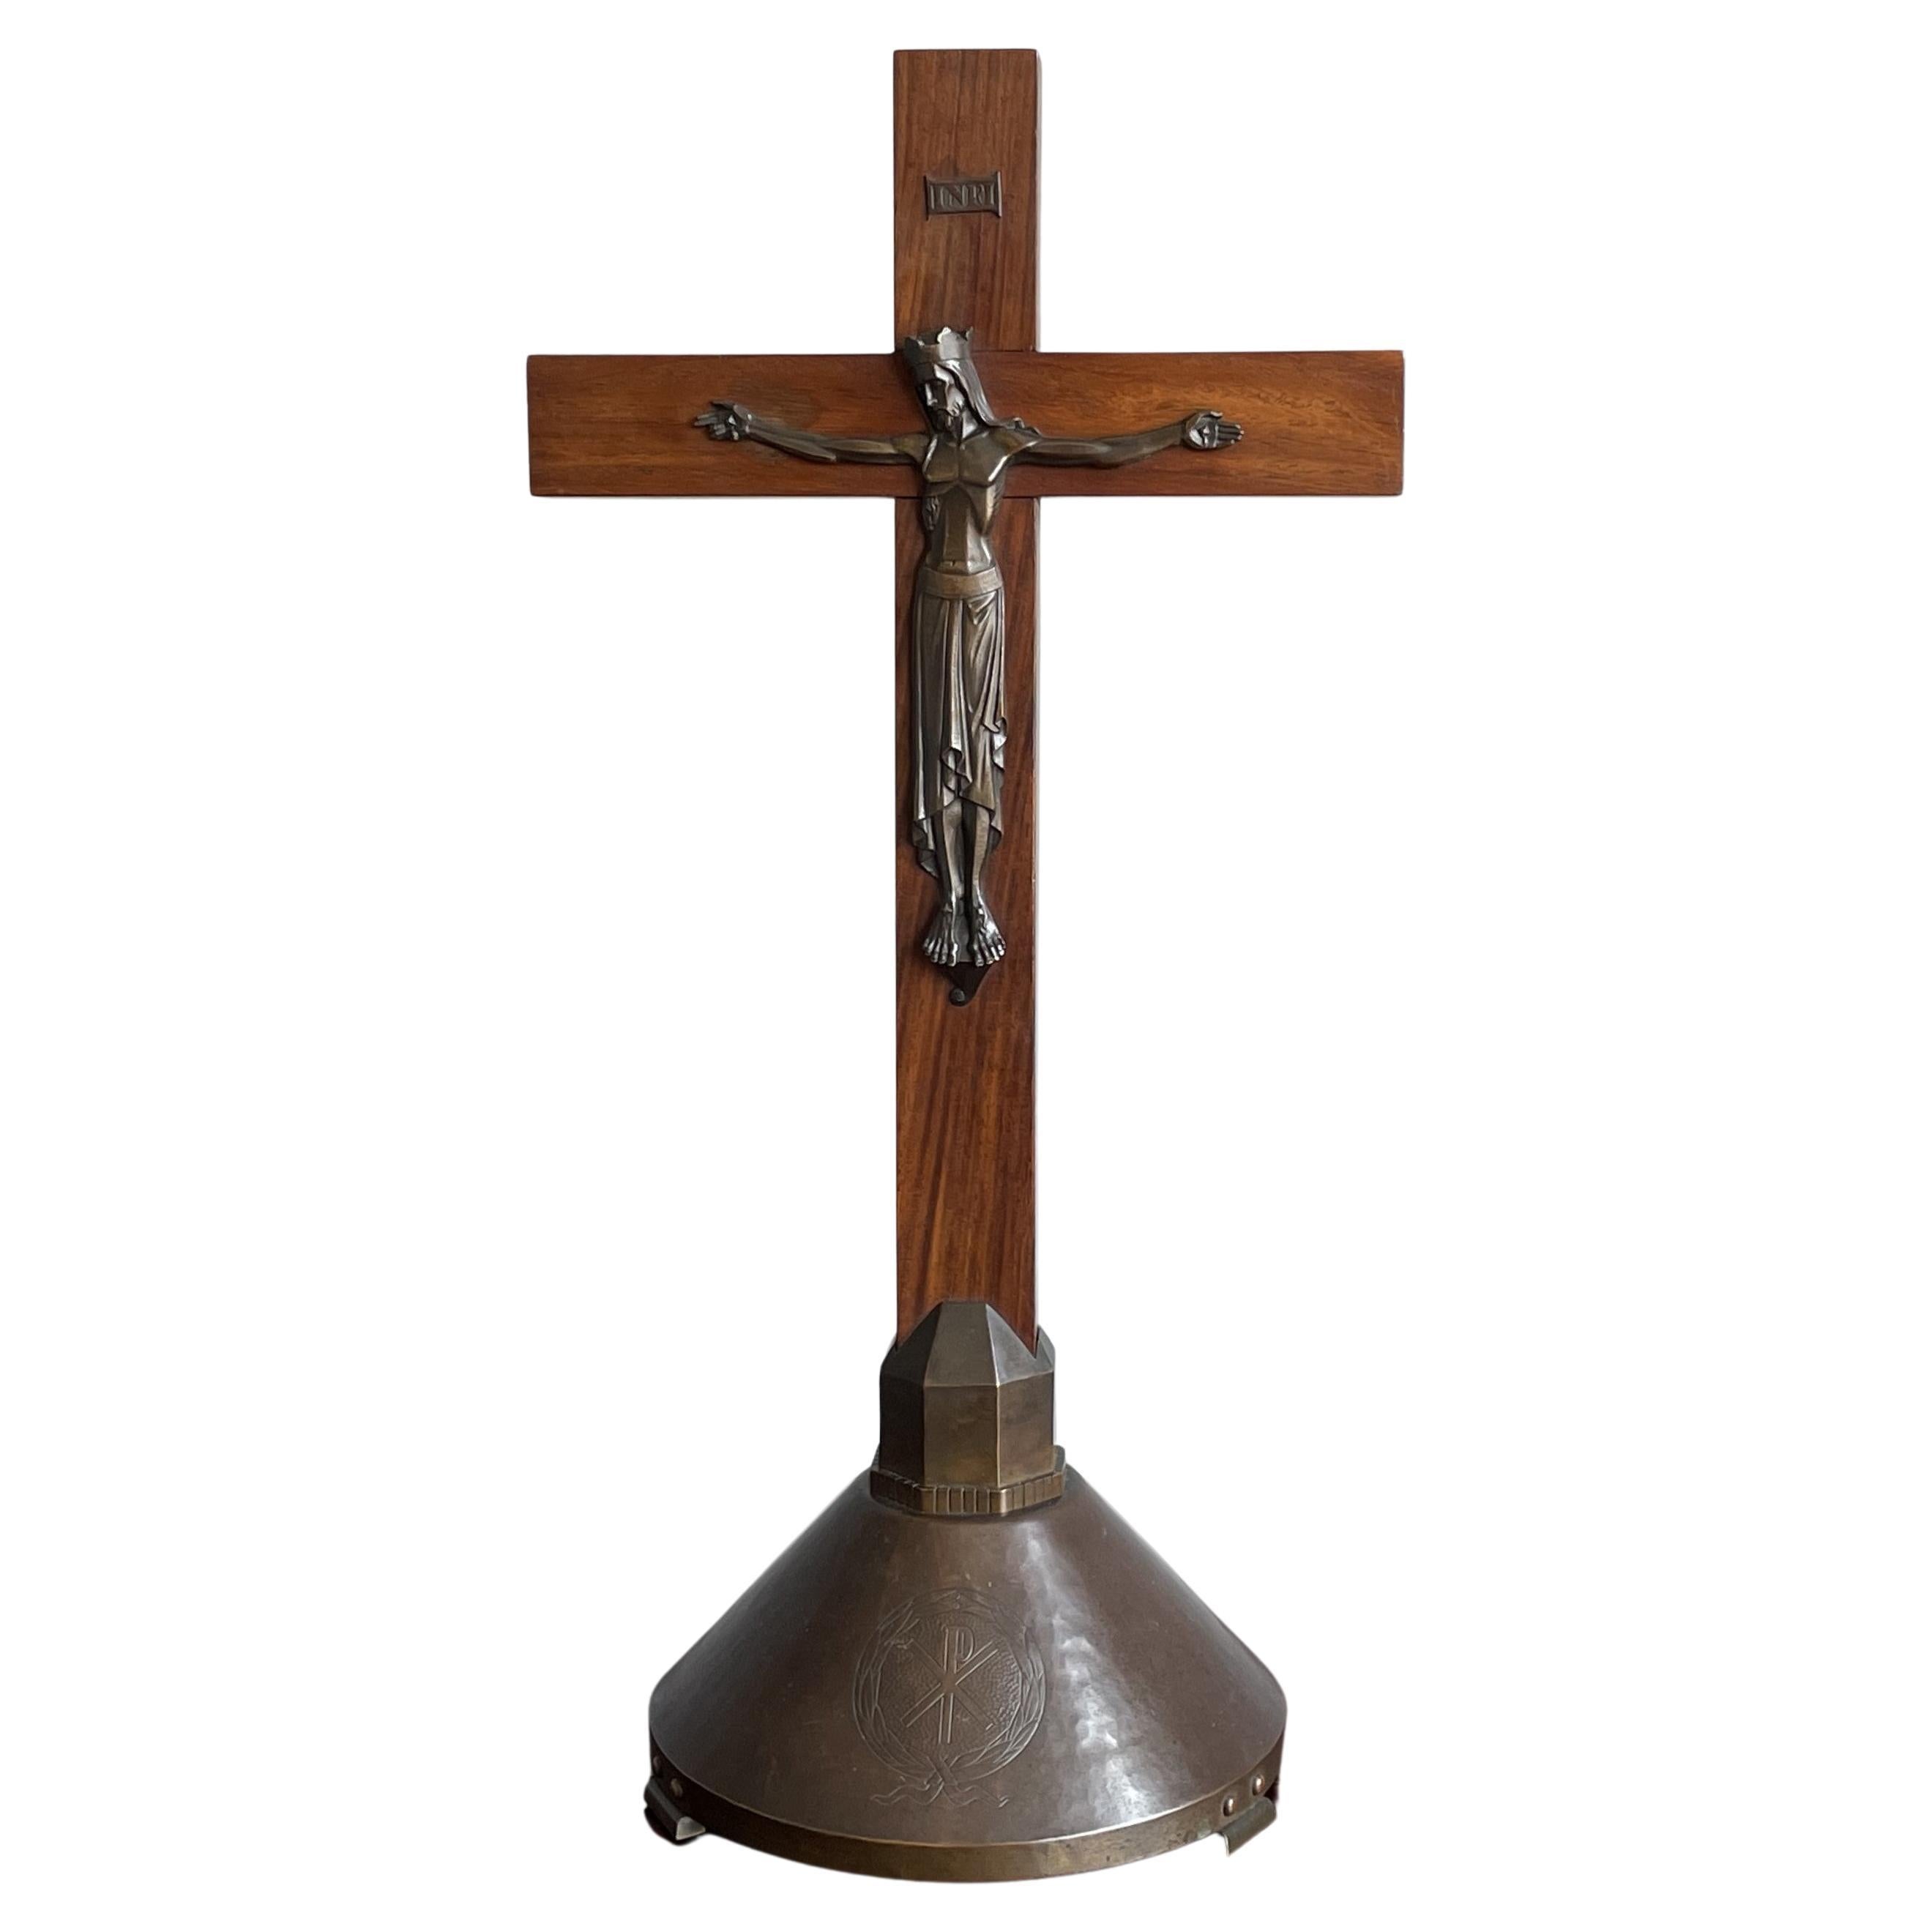 Pure Art Deco Kruzifix w. Stilisierte Bronzeskulptur von Christus auf Seidenholzkreuz